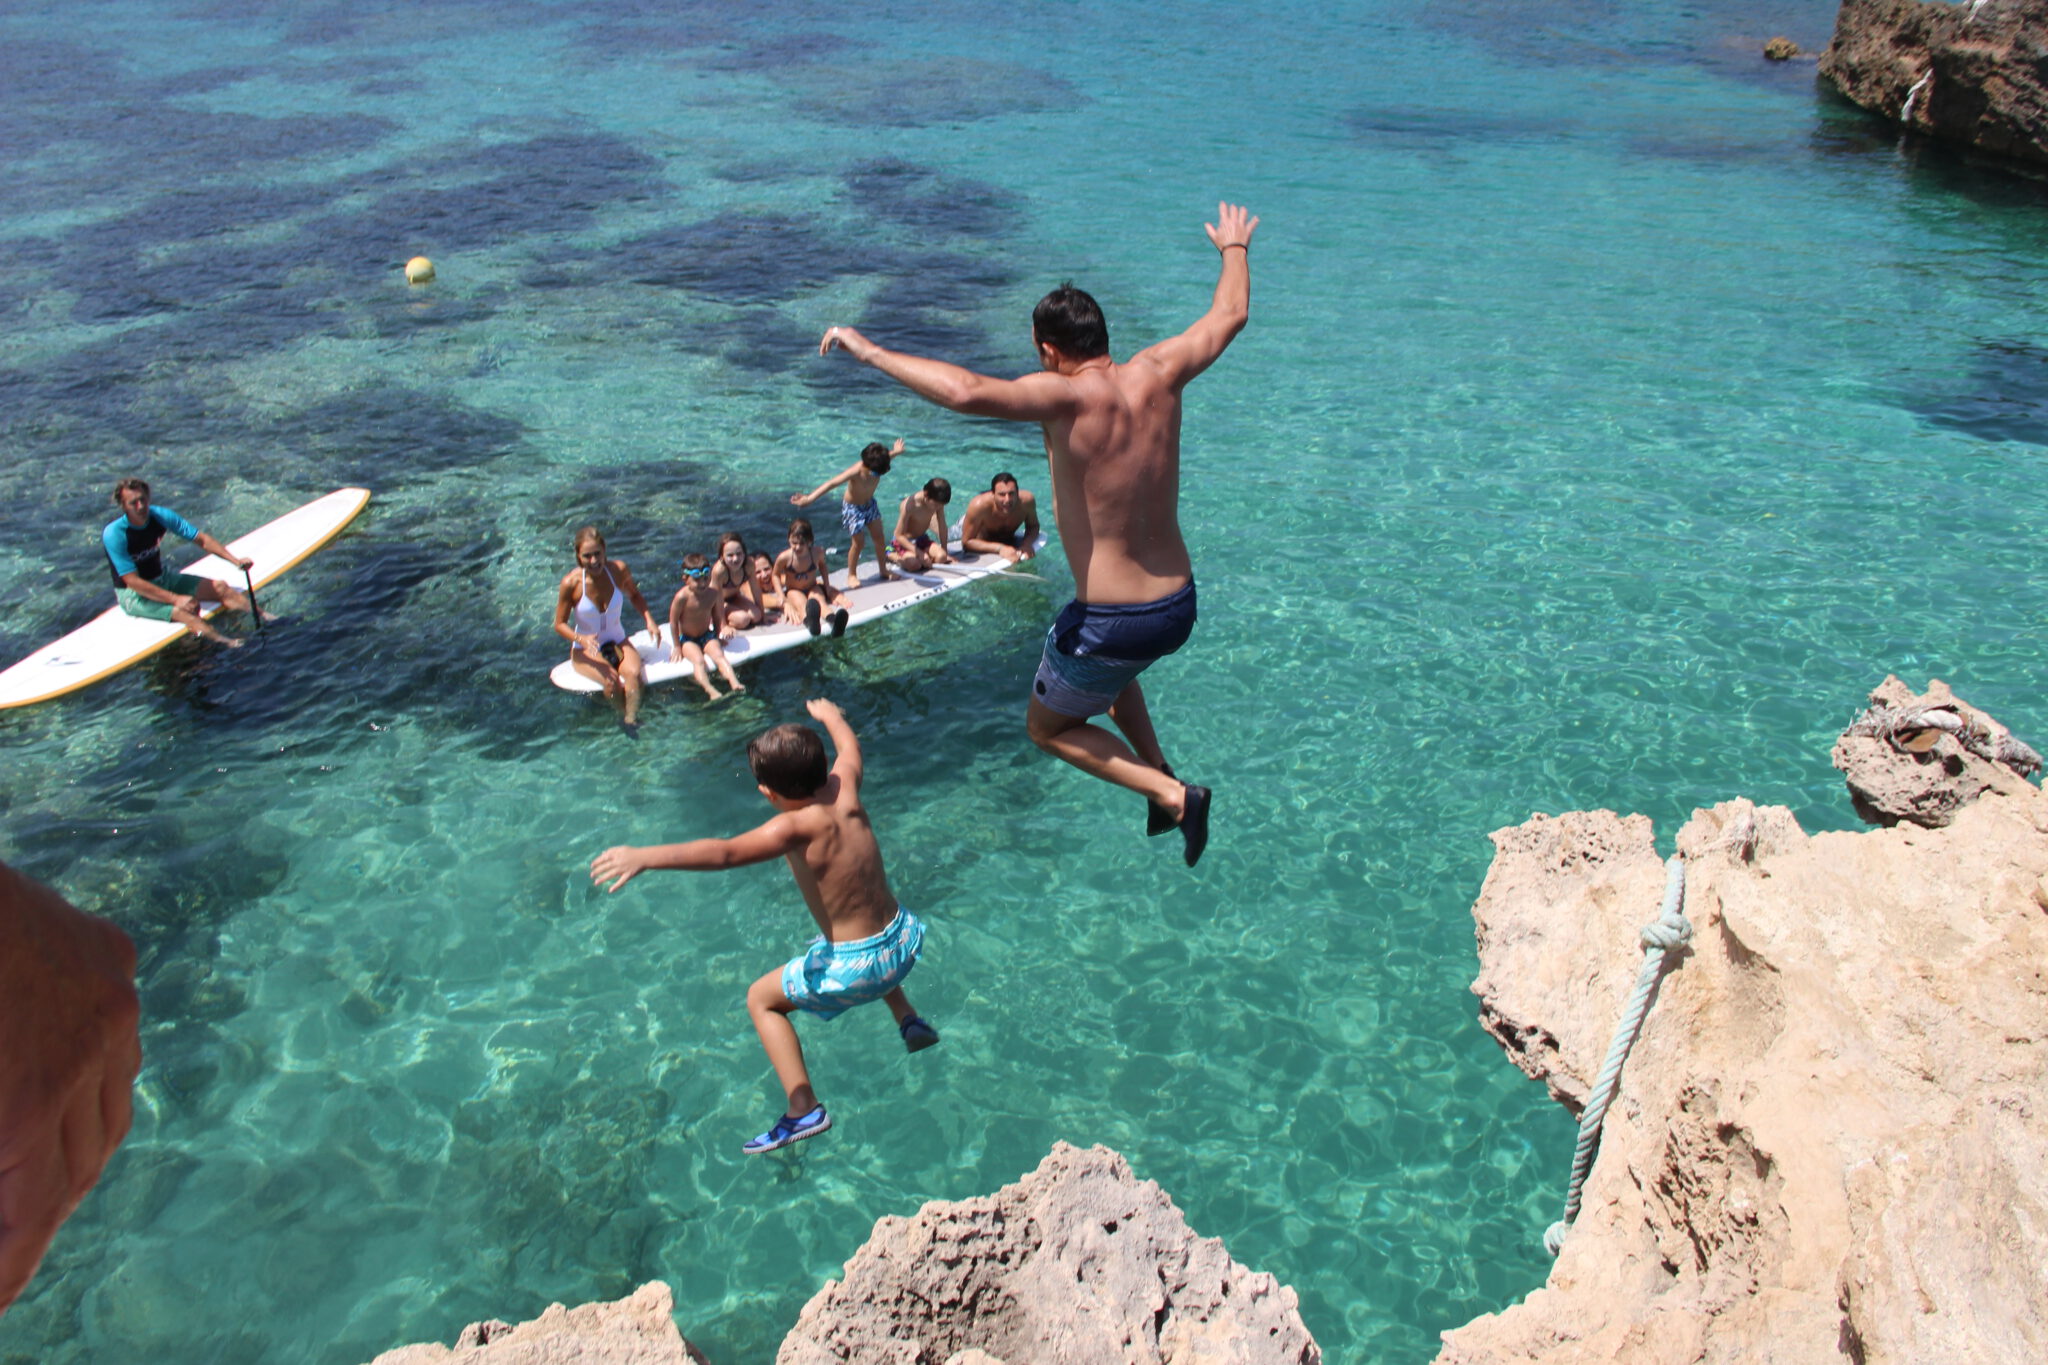 De top 5 beste dingen om te doen op Ibiza